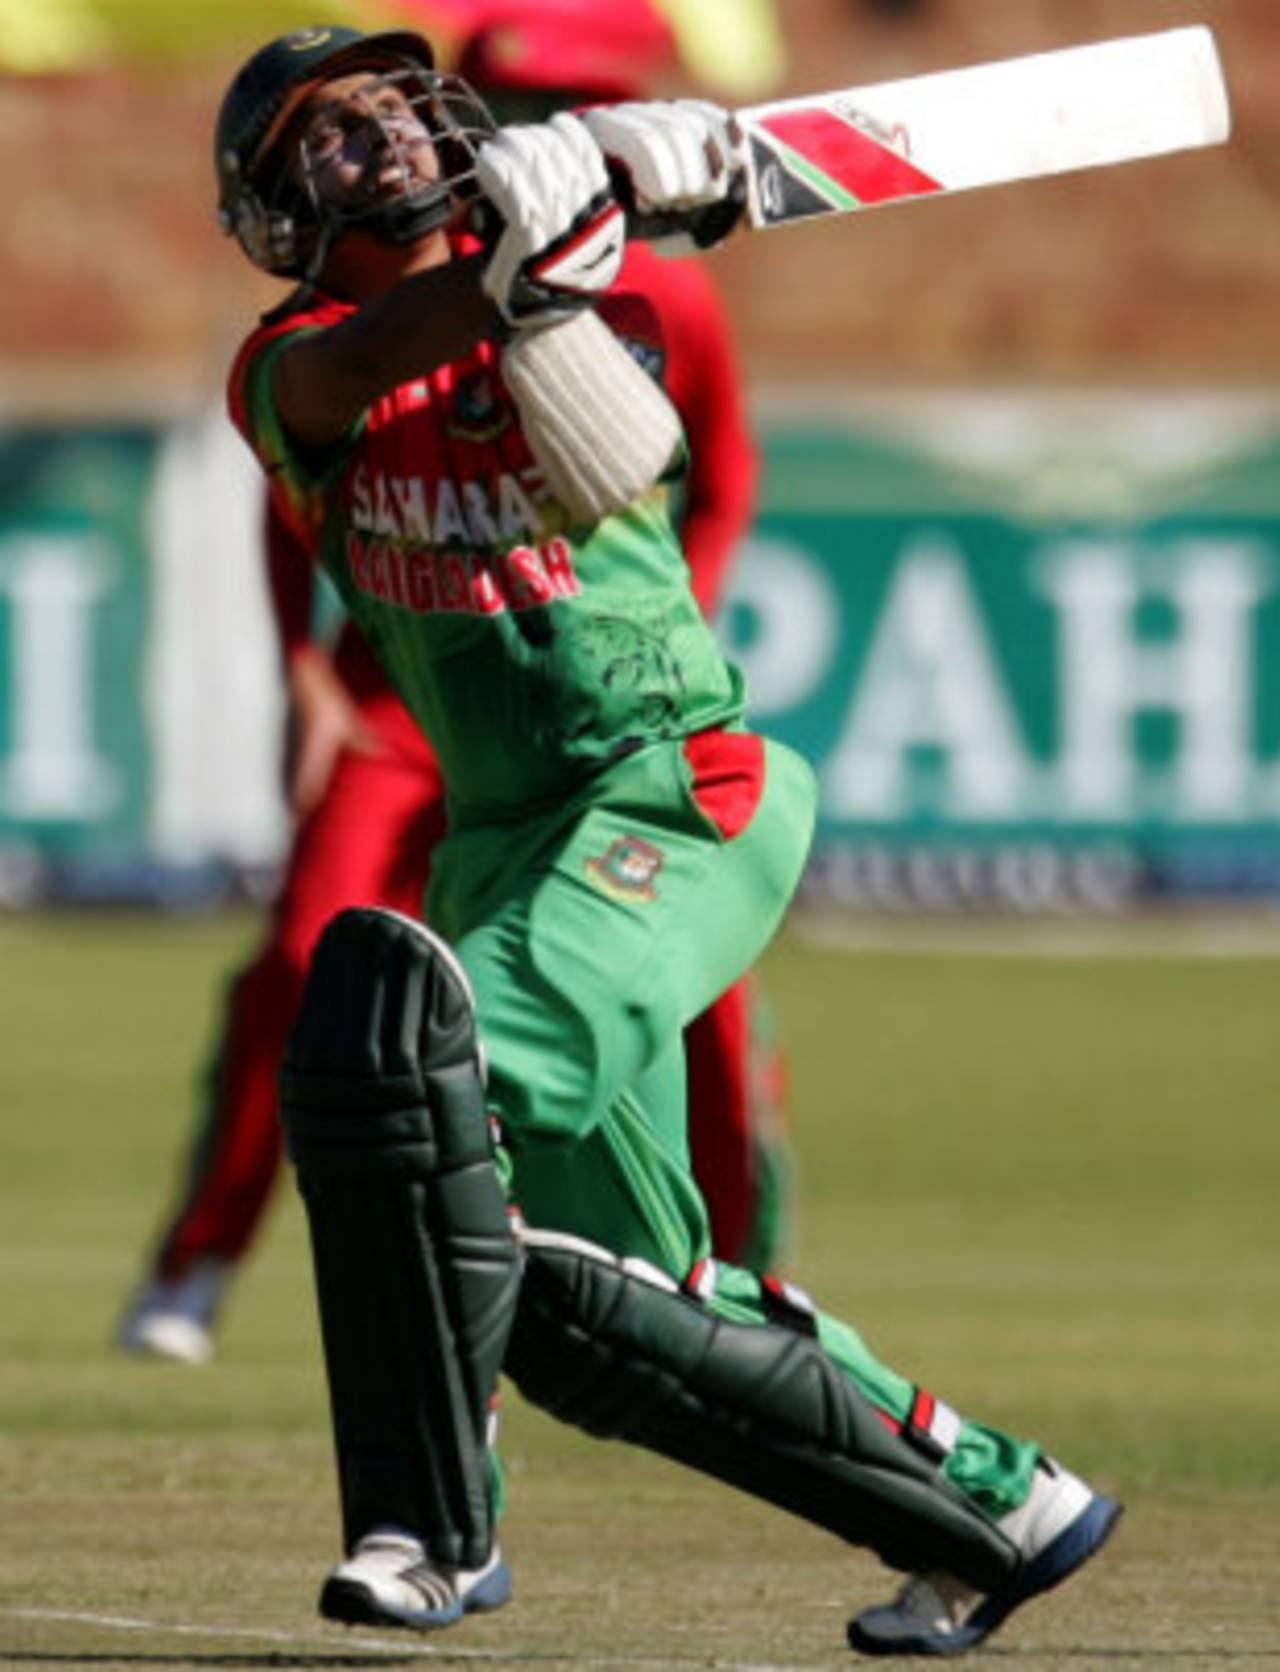 Mohammad Ashraful skies one, Zimbabwe v Bangladesh, 2nd ODI, Bulawayo, May 5, 2013